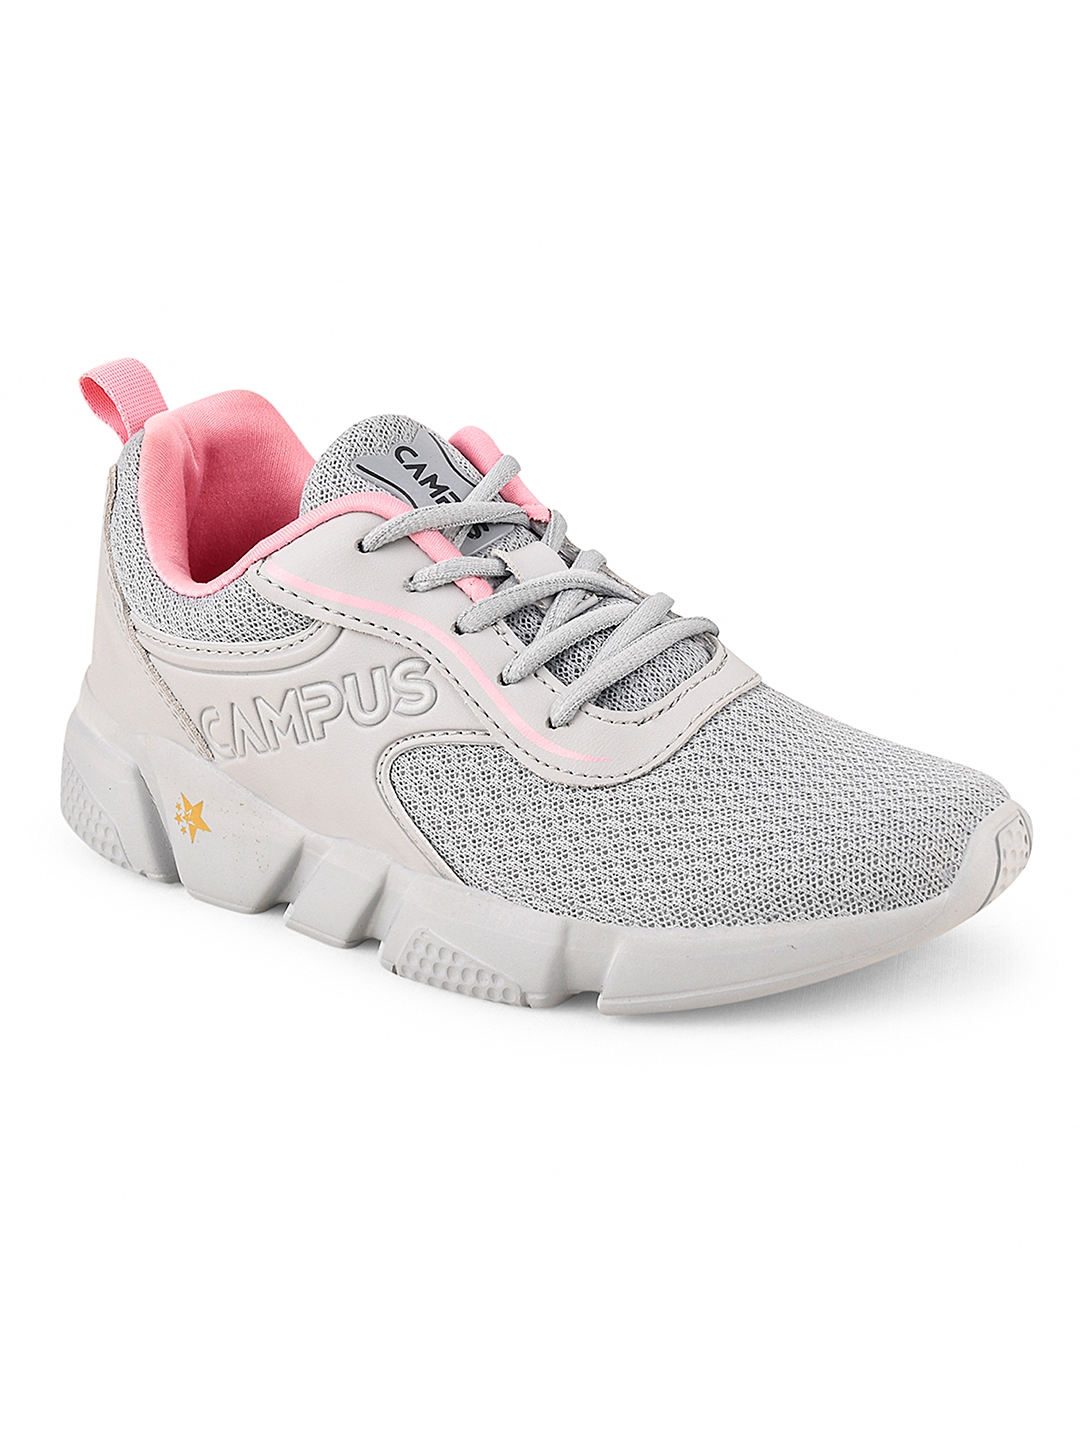 Women's Camp Grey Mesh Running Shoes